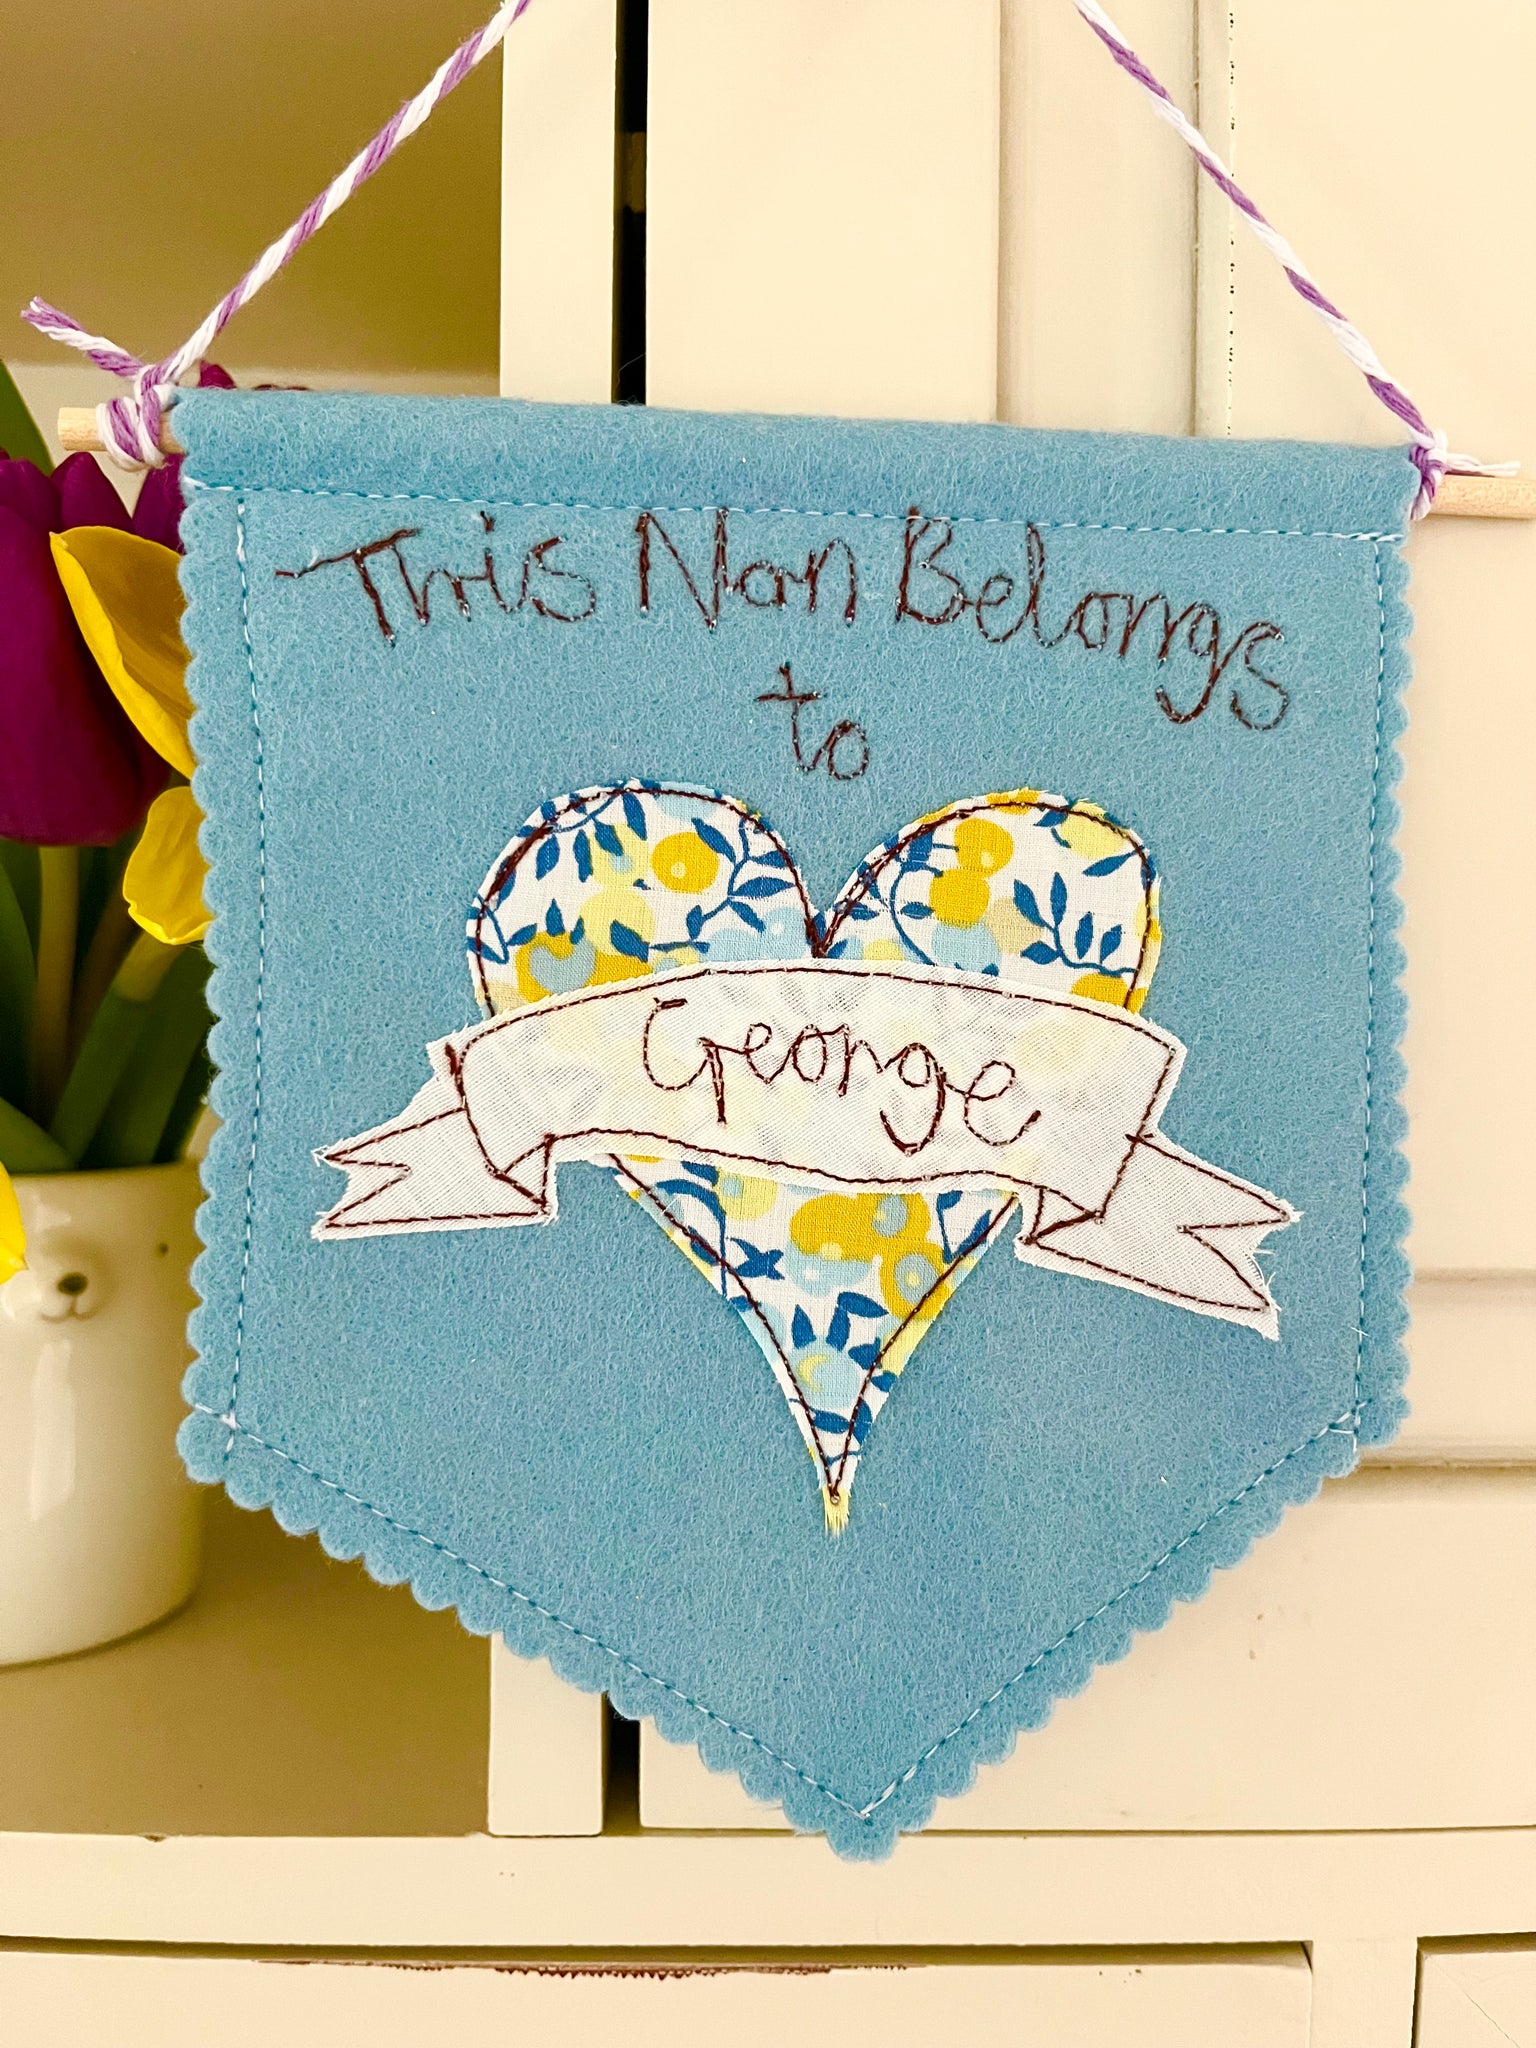 This Nan/Grandma belongs to banner